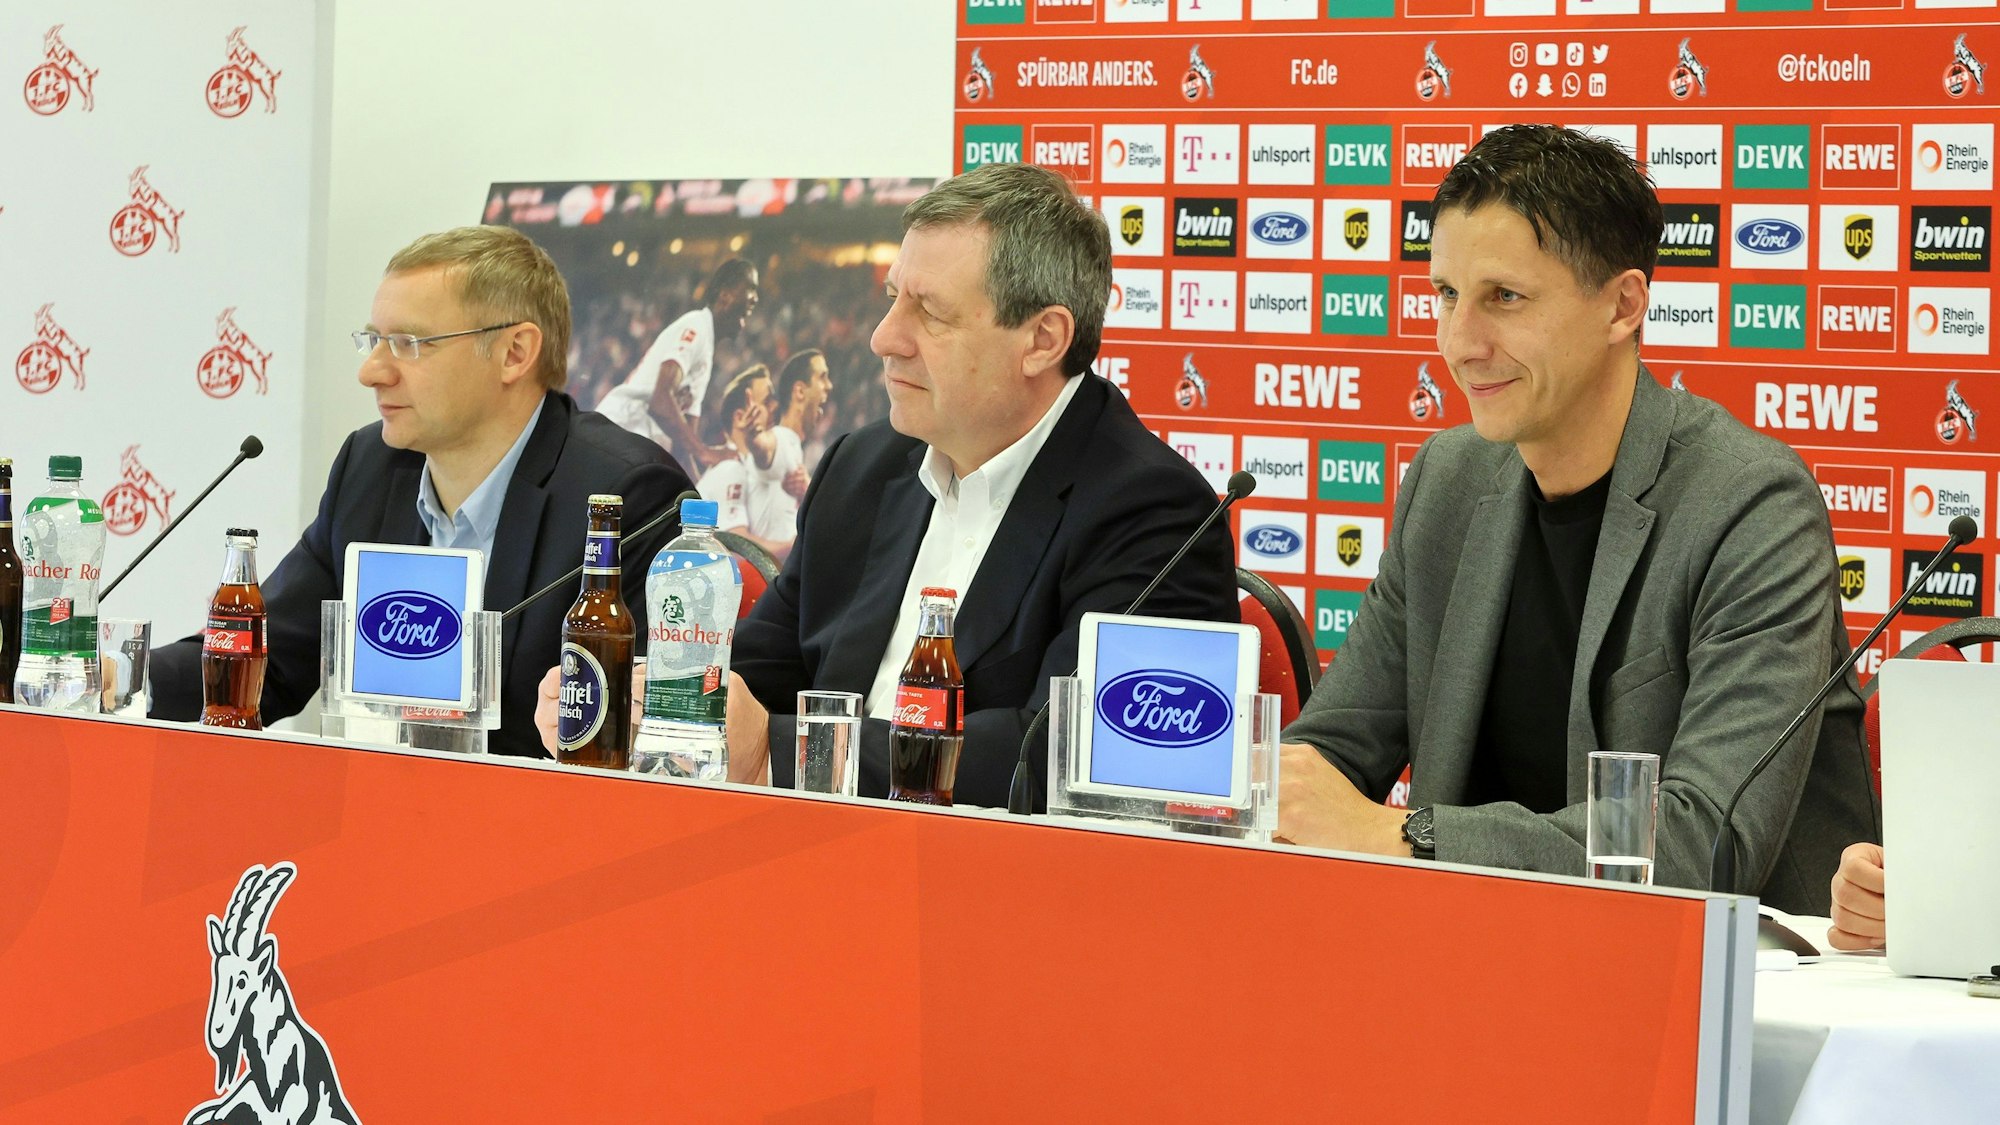 Christian Keller wird beim 1. FC Köln vorgestellt.